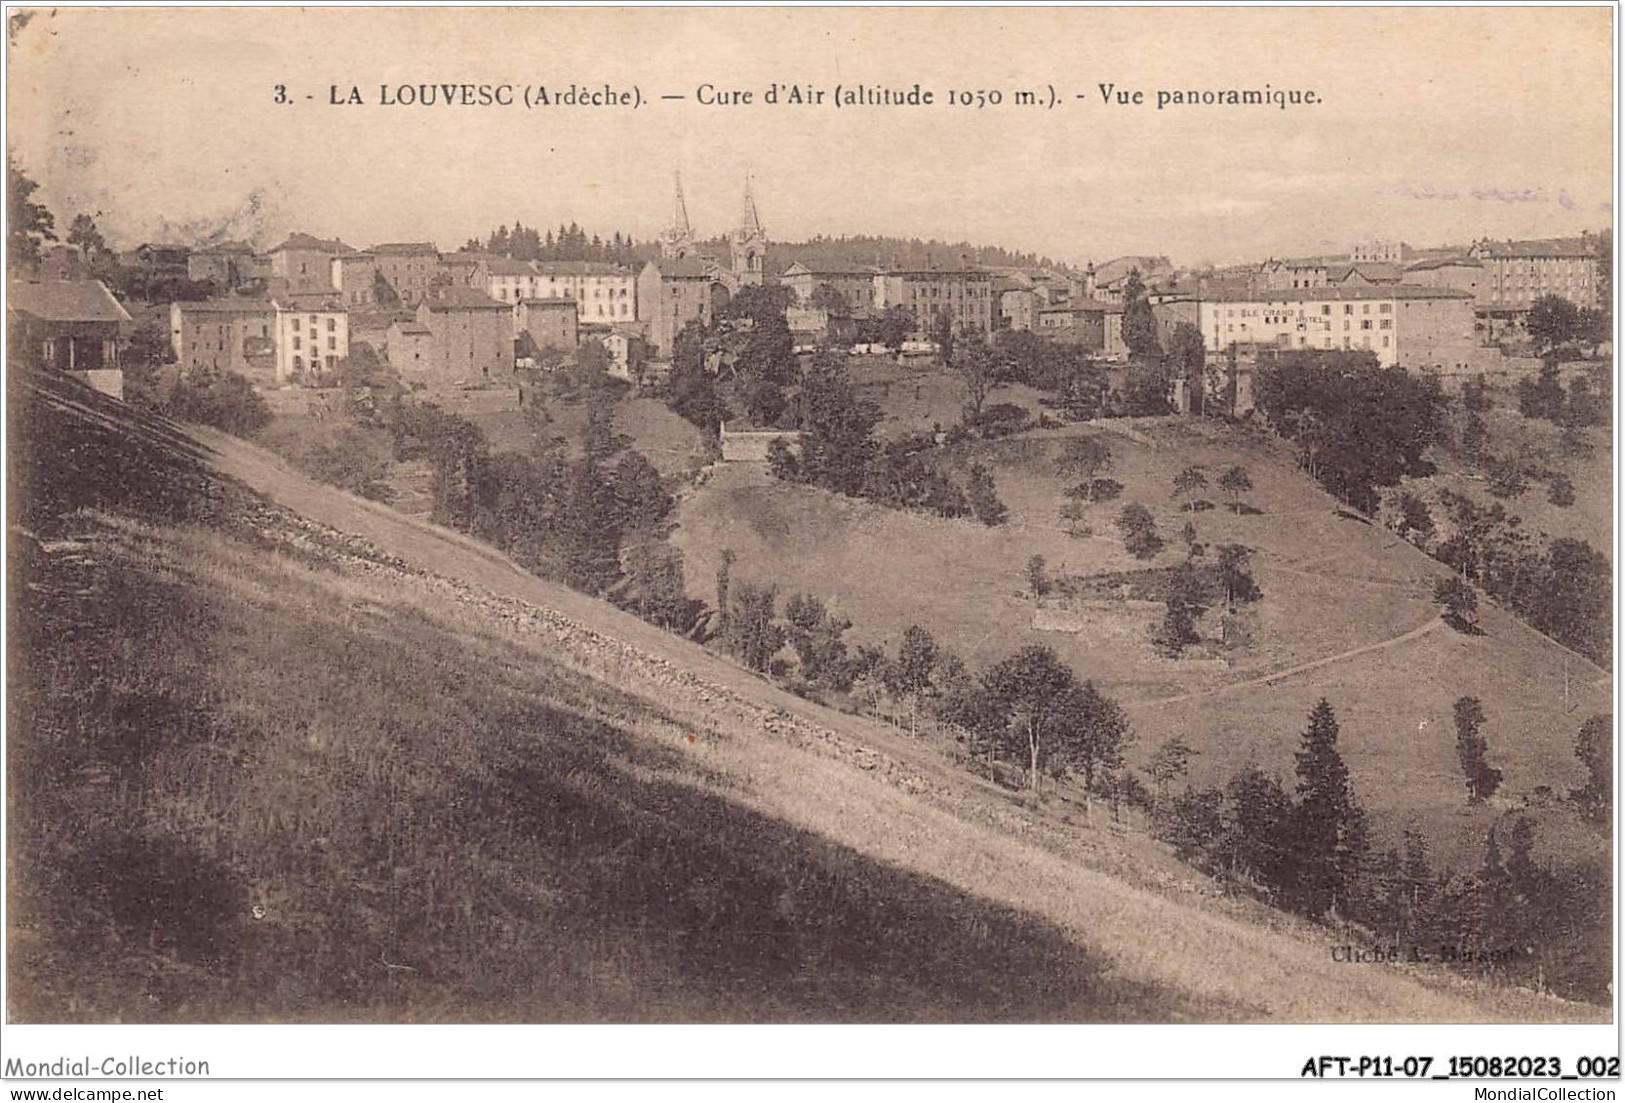 AFTP11-07-1009 - LA LOUVESC - Cure D'air - Vue Panoramique - La Louvesc